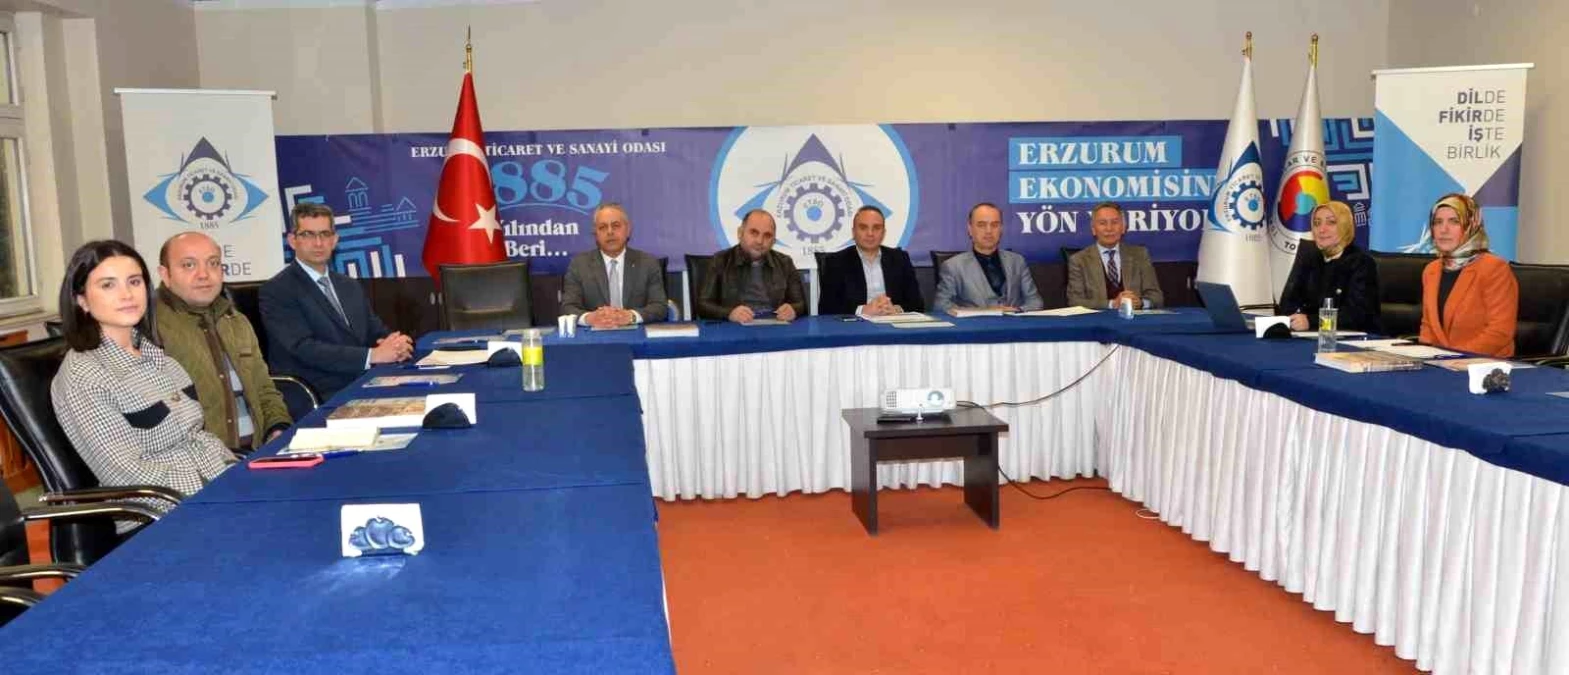 Erzurum Ticaret ve Sanayi Odası 3. Çalıştayı Hazırlıklarını Sürdürüyor